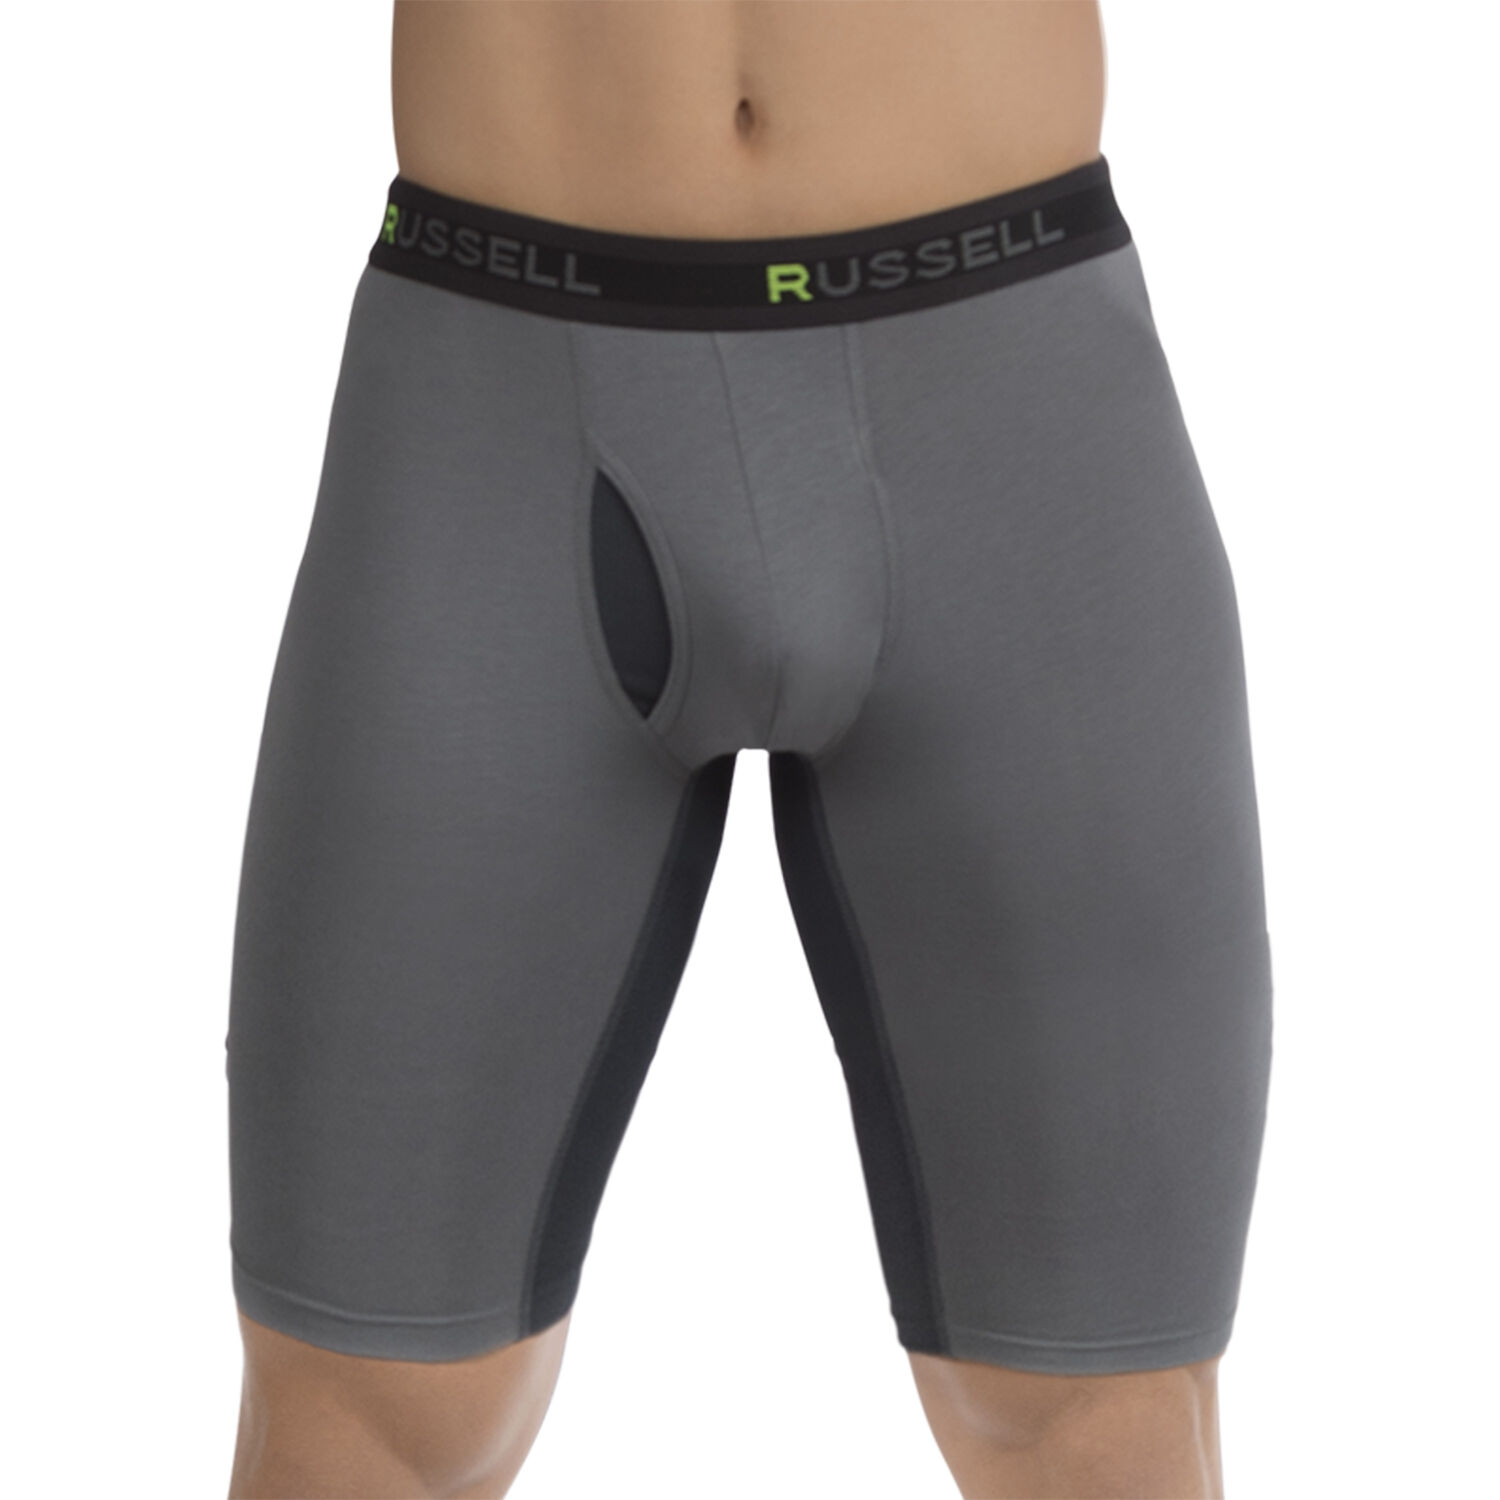 Russell Men's Assorted Short Leg Core Performance Boxer Briefs